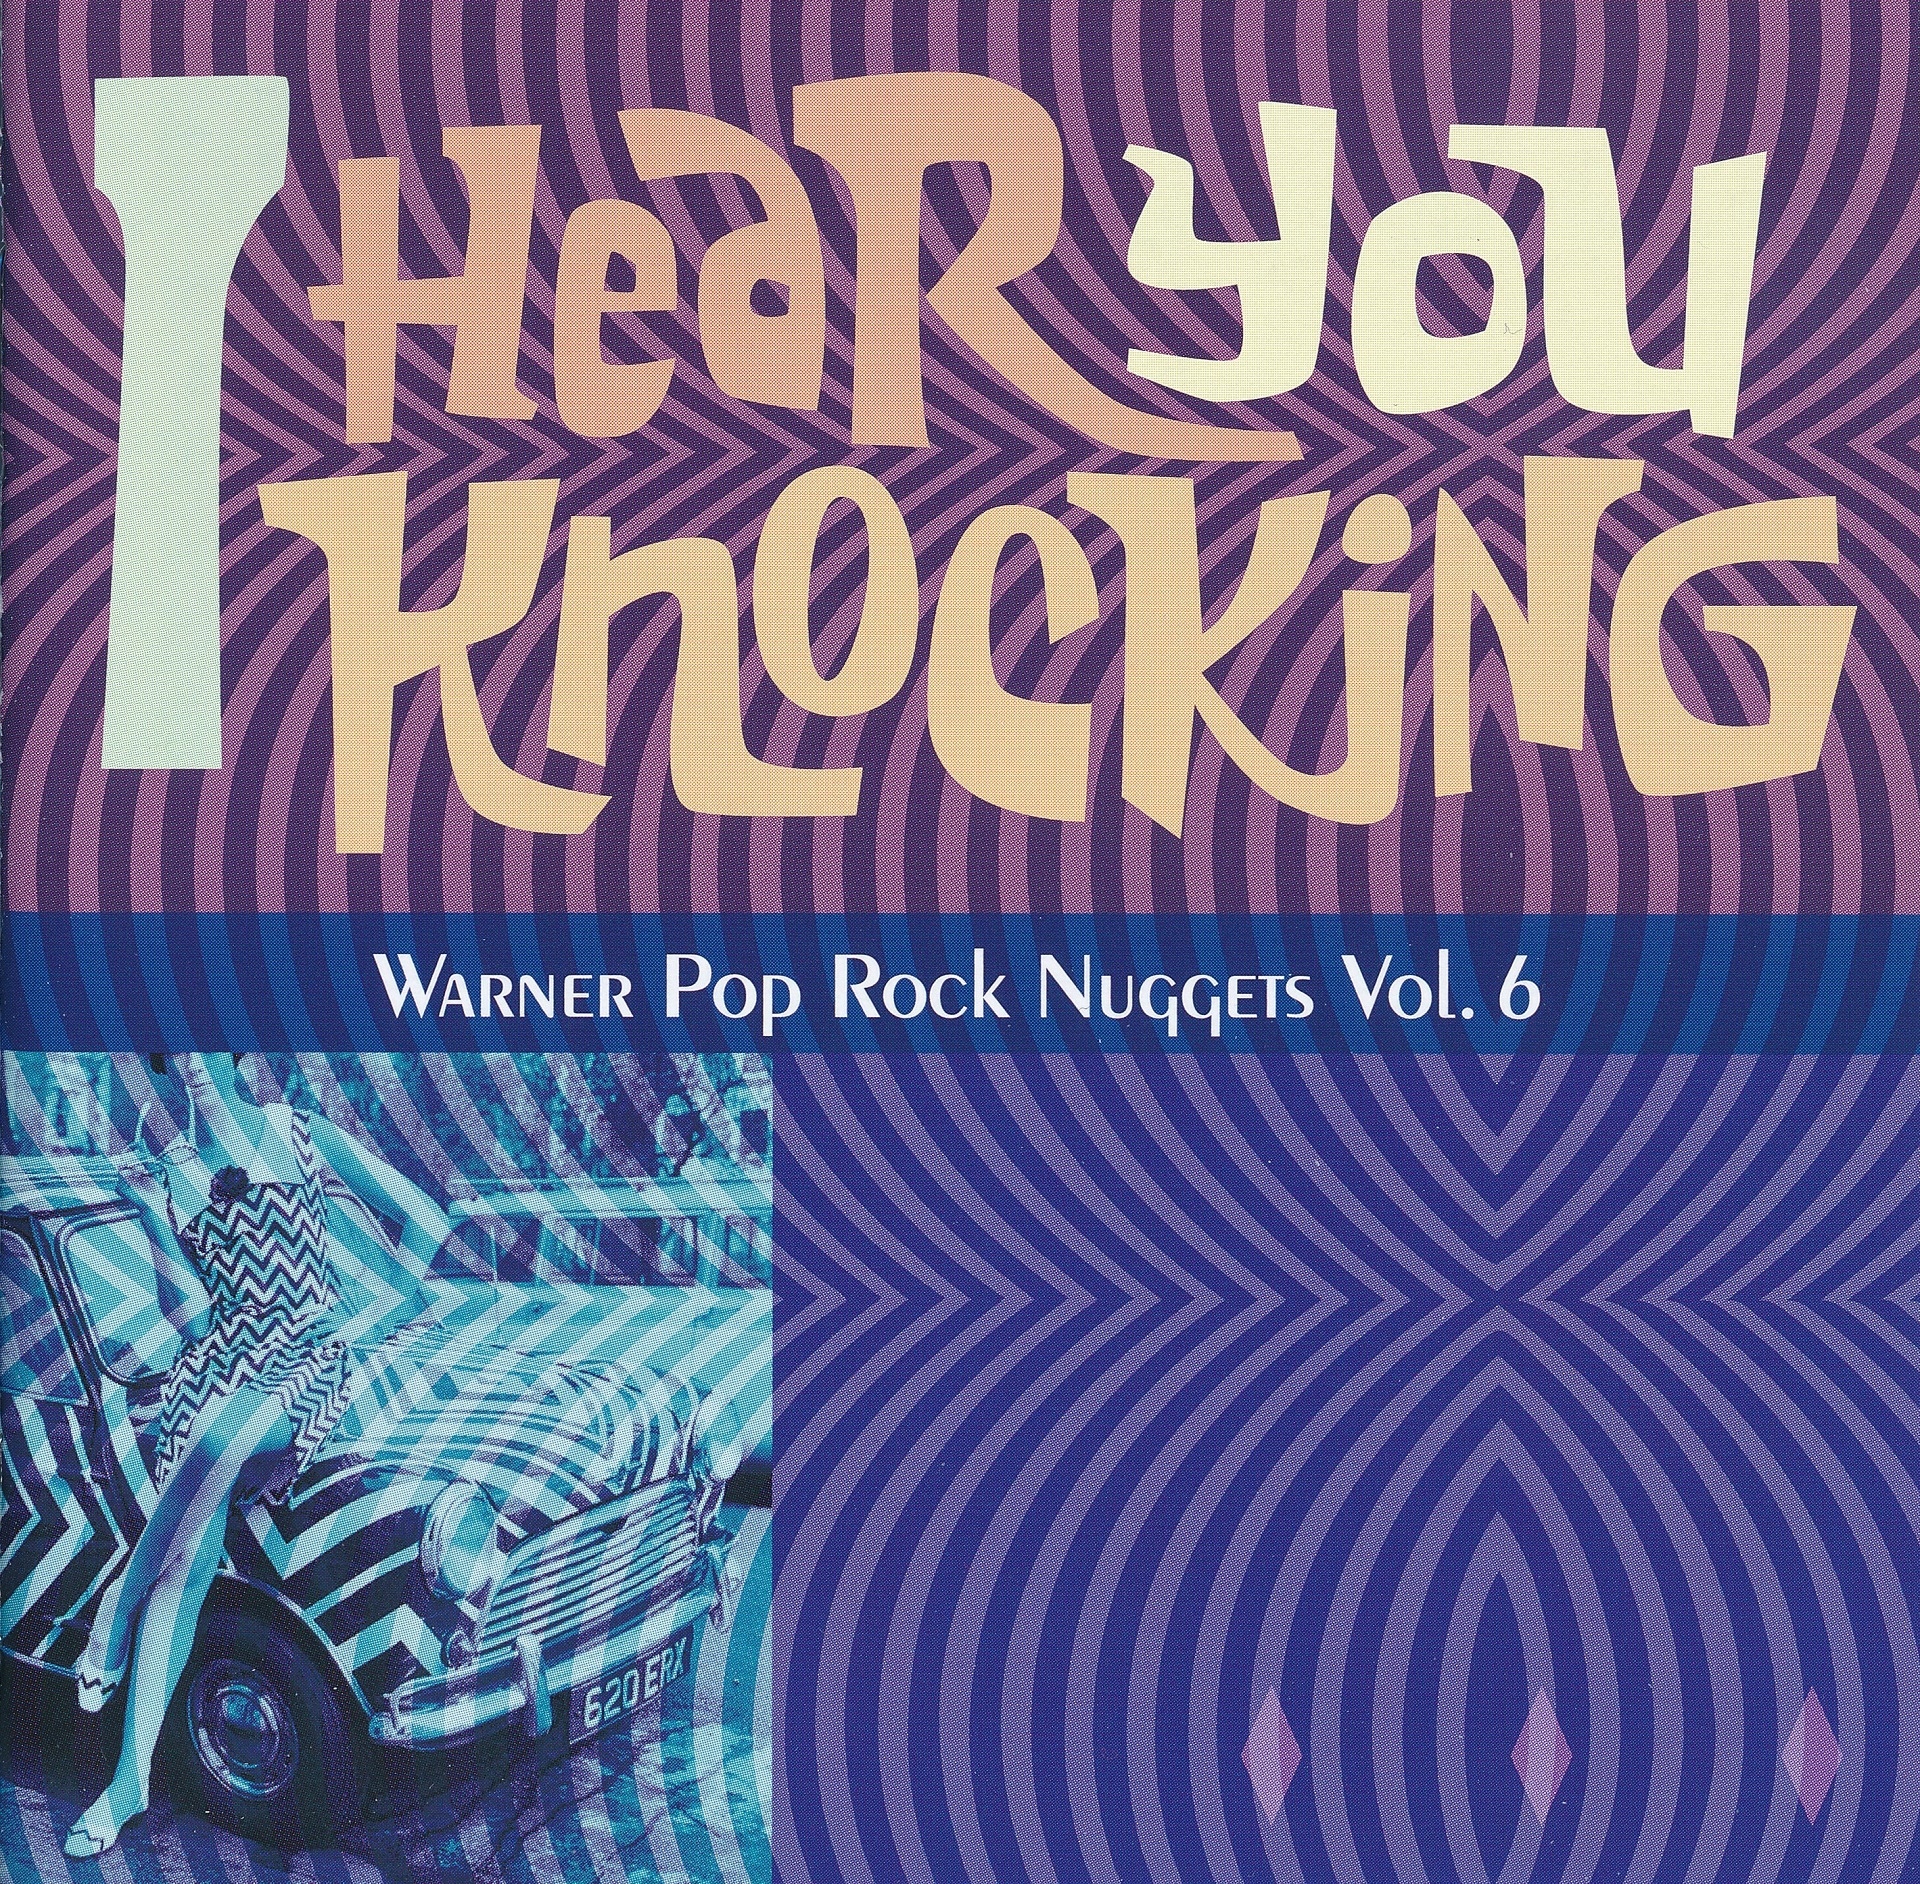 Warner Pop Rock Nuggets Volume 6 I Hear You Knocking